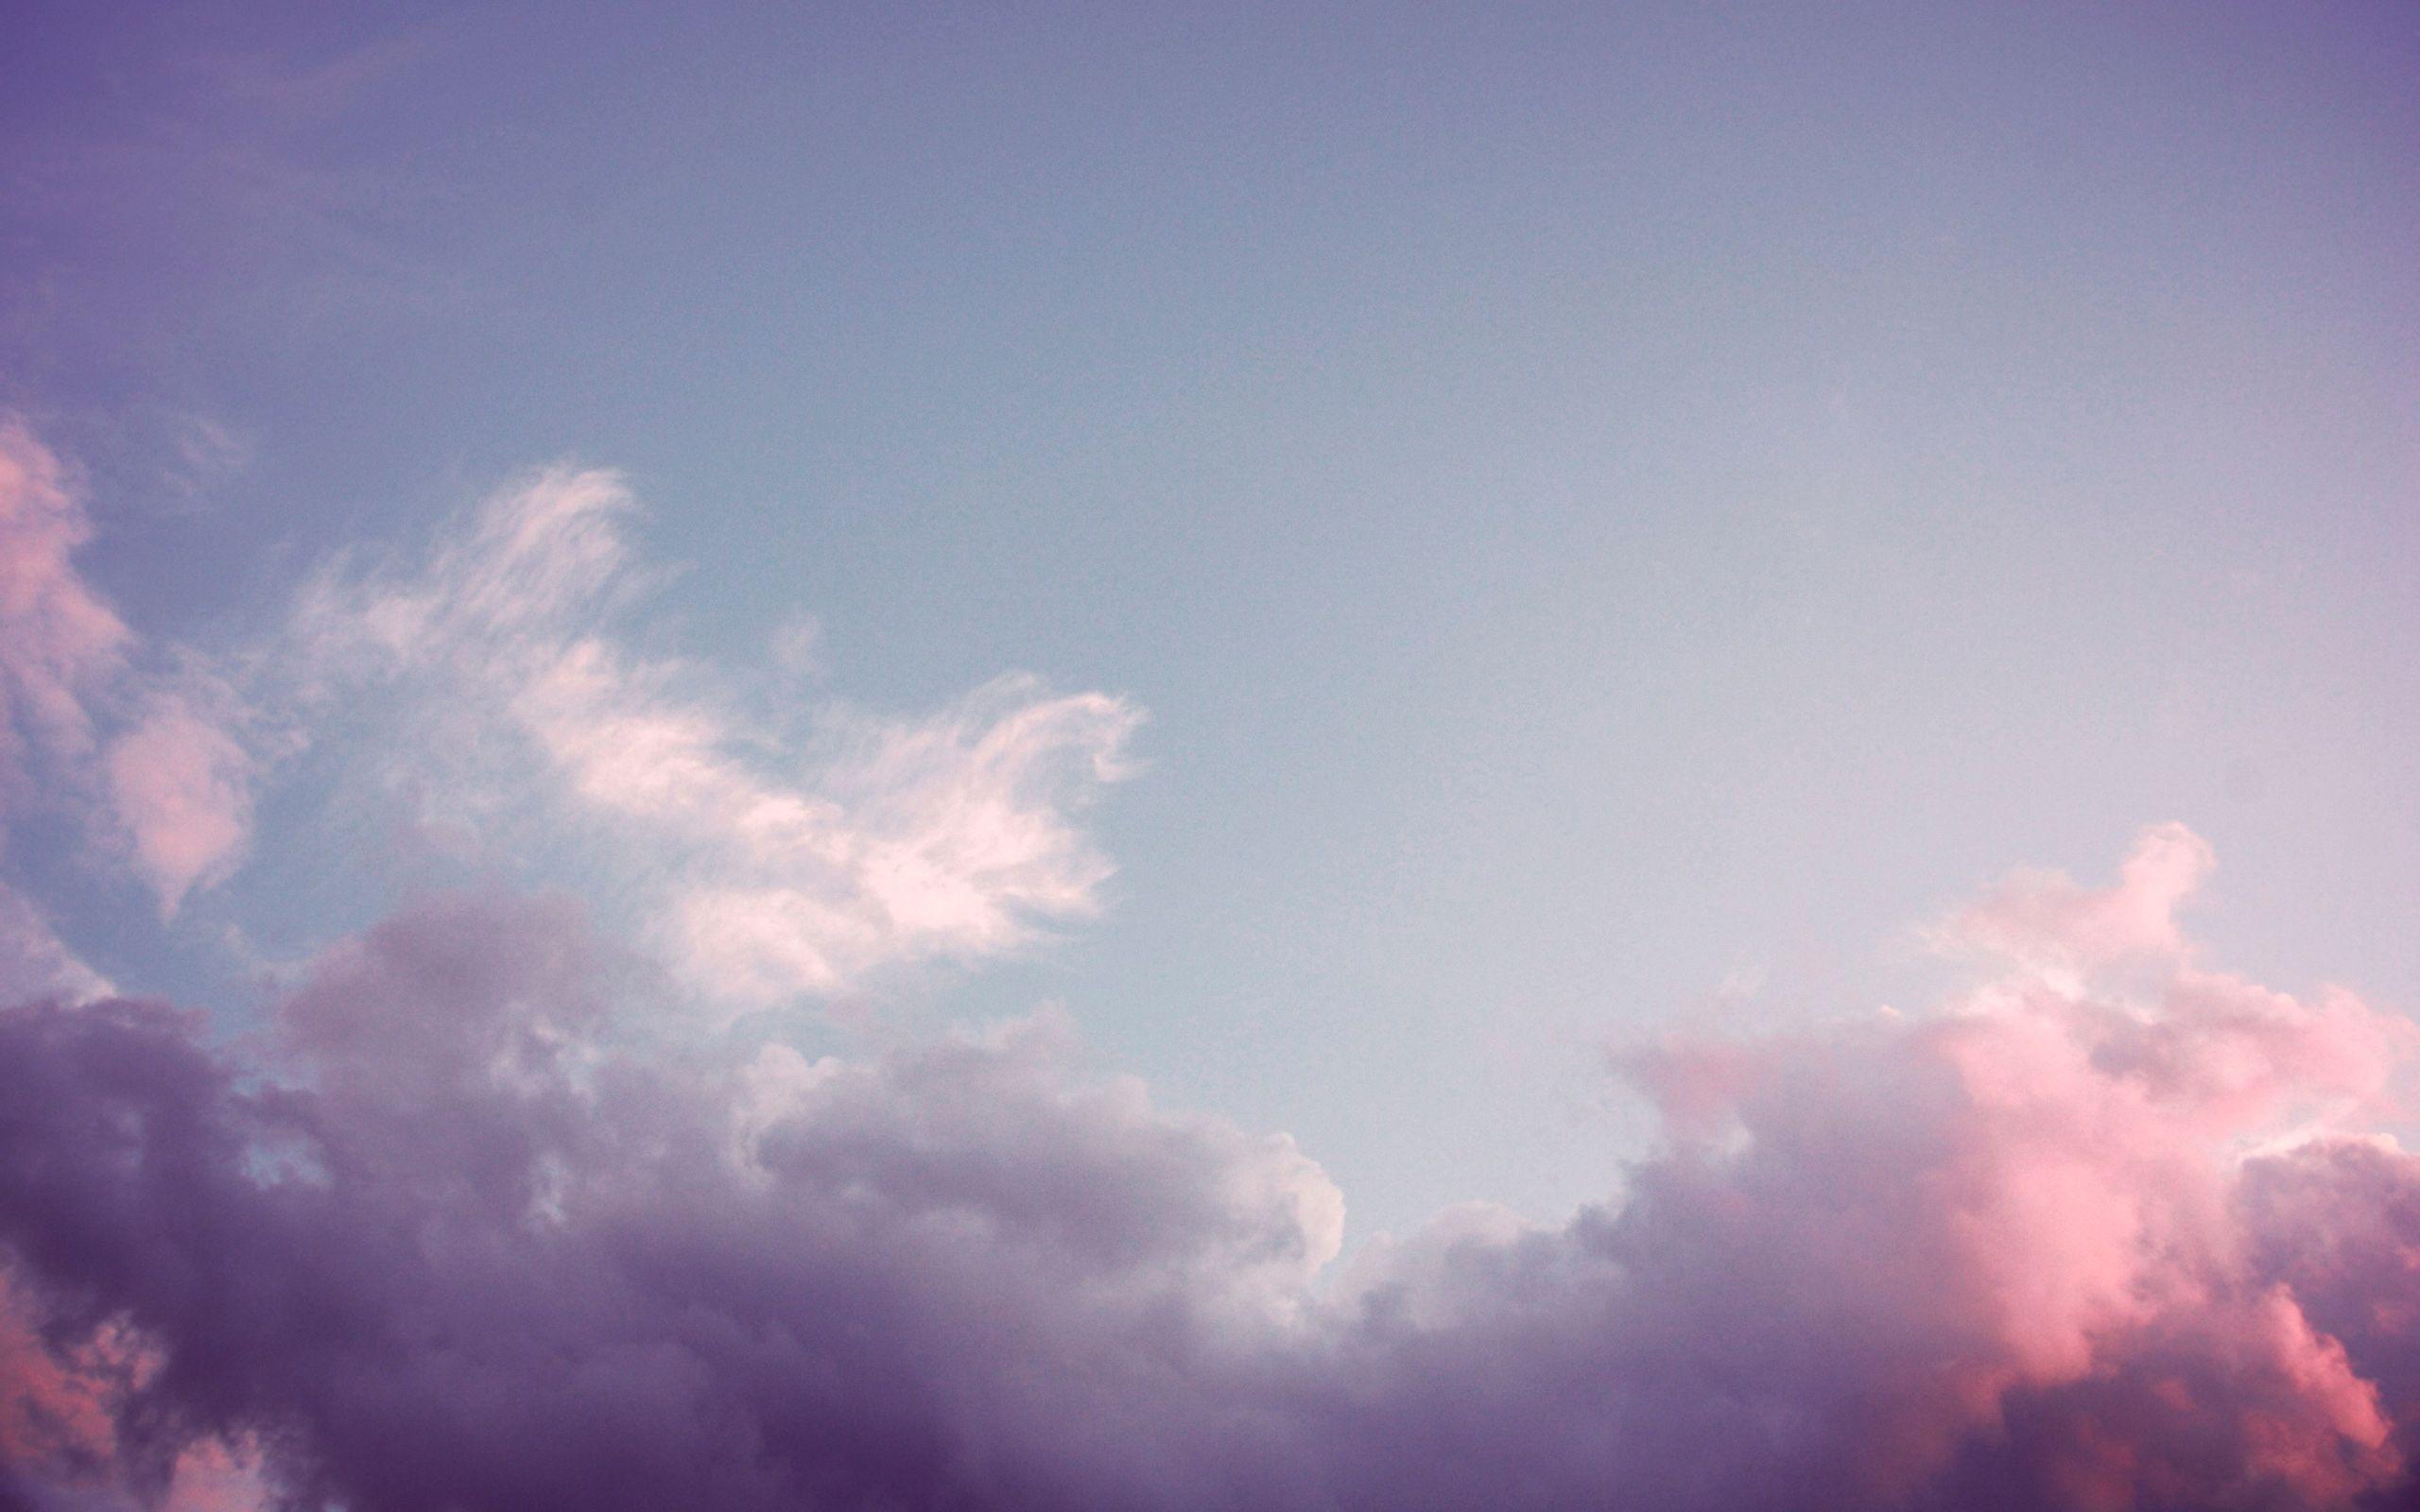 Pink Cloud Wallpapers - Bộ sưu tập hình nền Pink Cloud Wallpapers sẽ khiến cho bạn thật sự bị cuốn hút bởi những gam màu hồng tươi sáng và đẹp mắt của những đám mây, giúp bạn thư giãn mỗi khi nhìn những bức ảnh đẹp này.